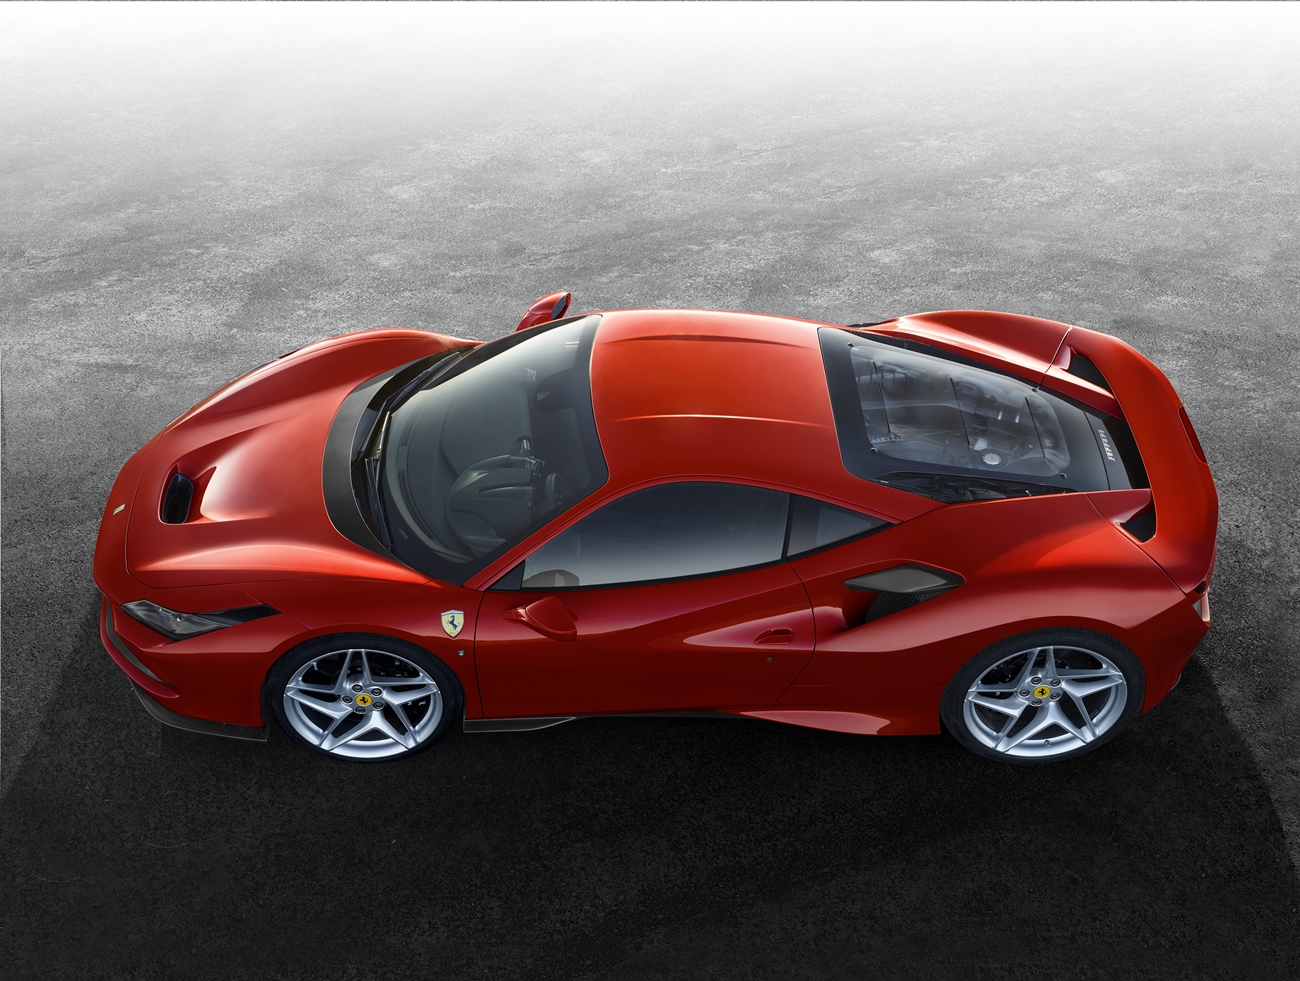 Nuevo Ferrari F8 Tributo